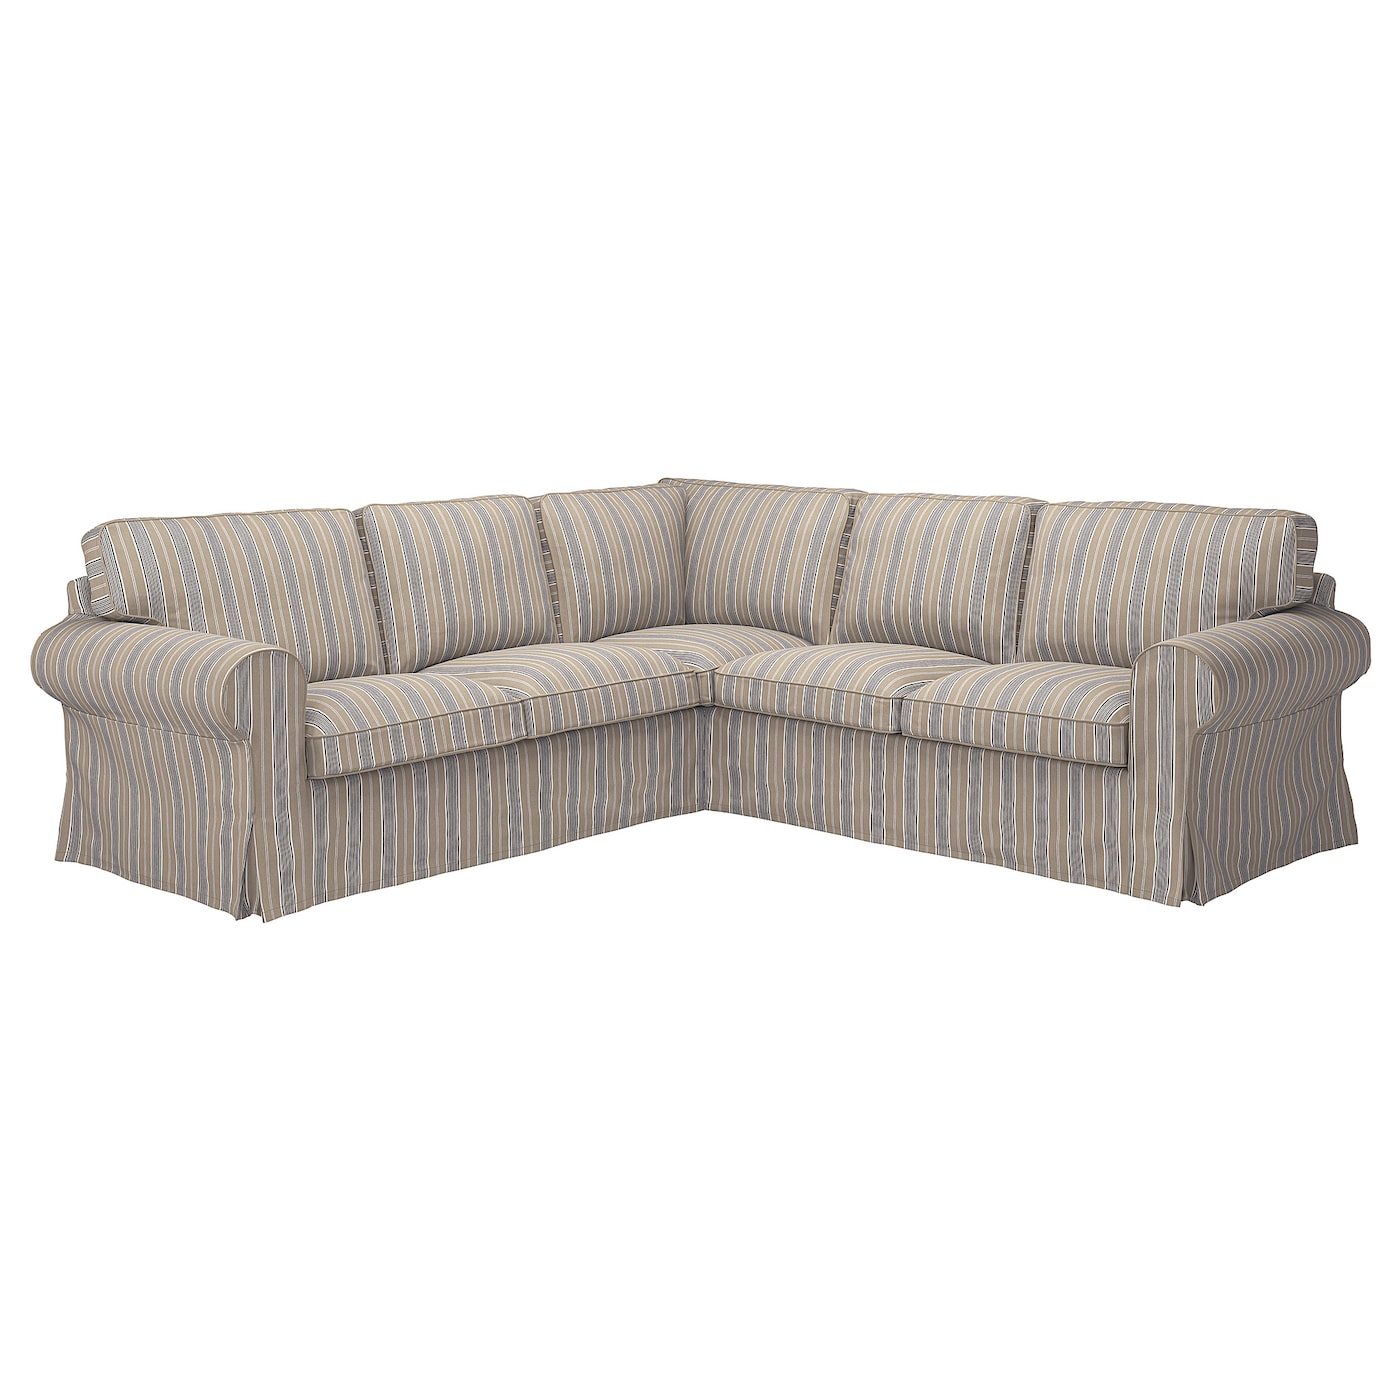 ЭКТОРП 4-местный угловой диван, Карлшов бежевый/мультиколор EKTORP IKEA